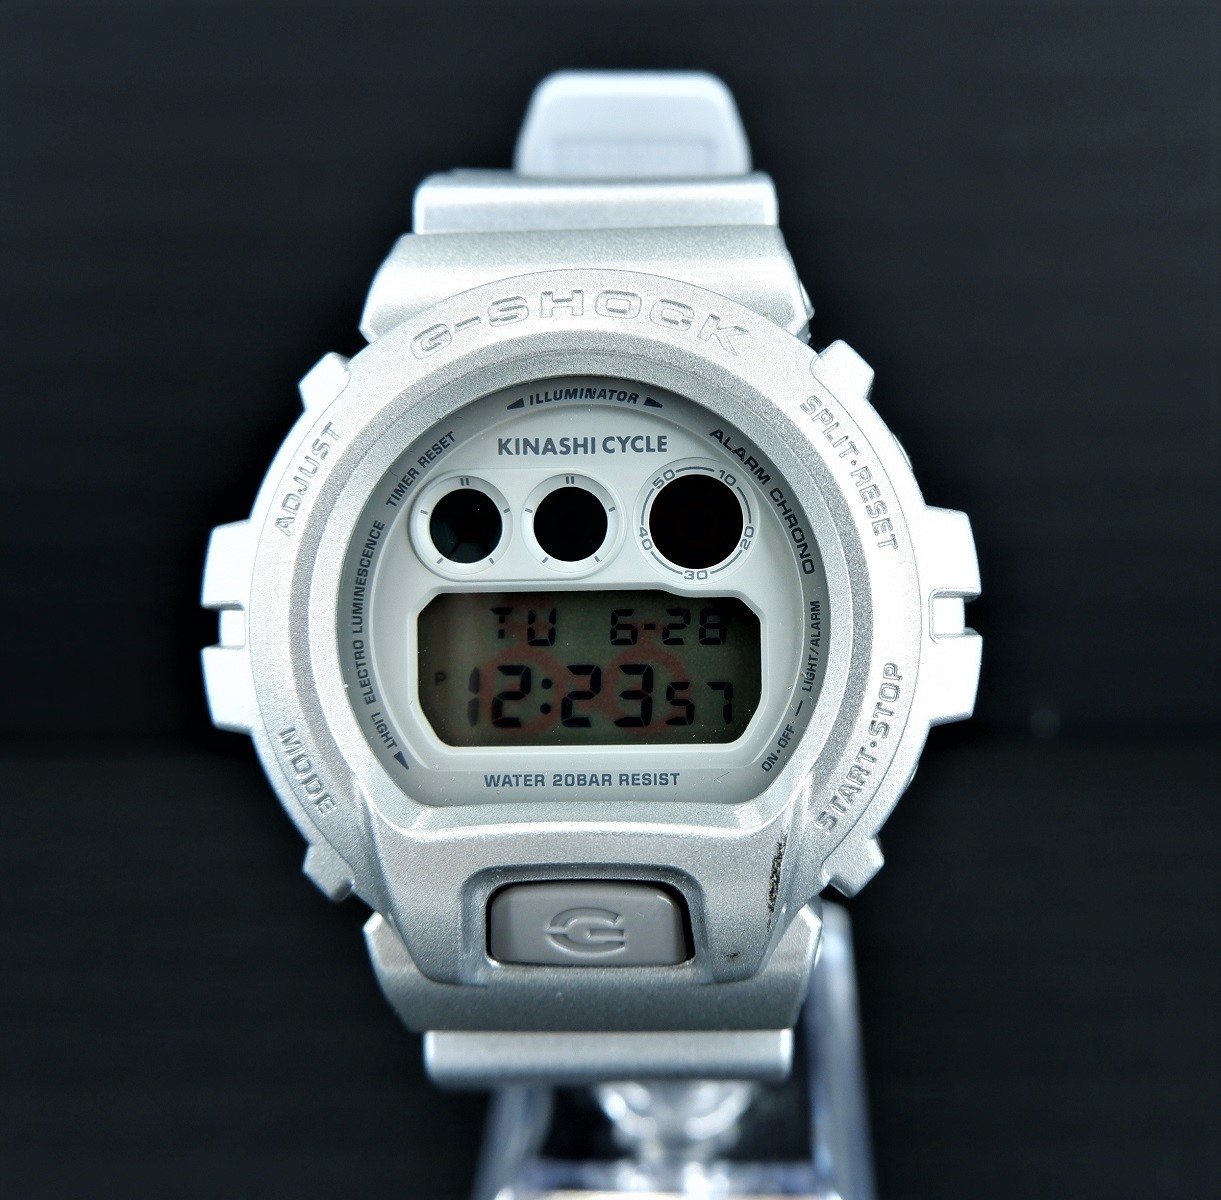 Casio DW6900 watches for sale on Rakuten Japan | WatchCharts